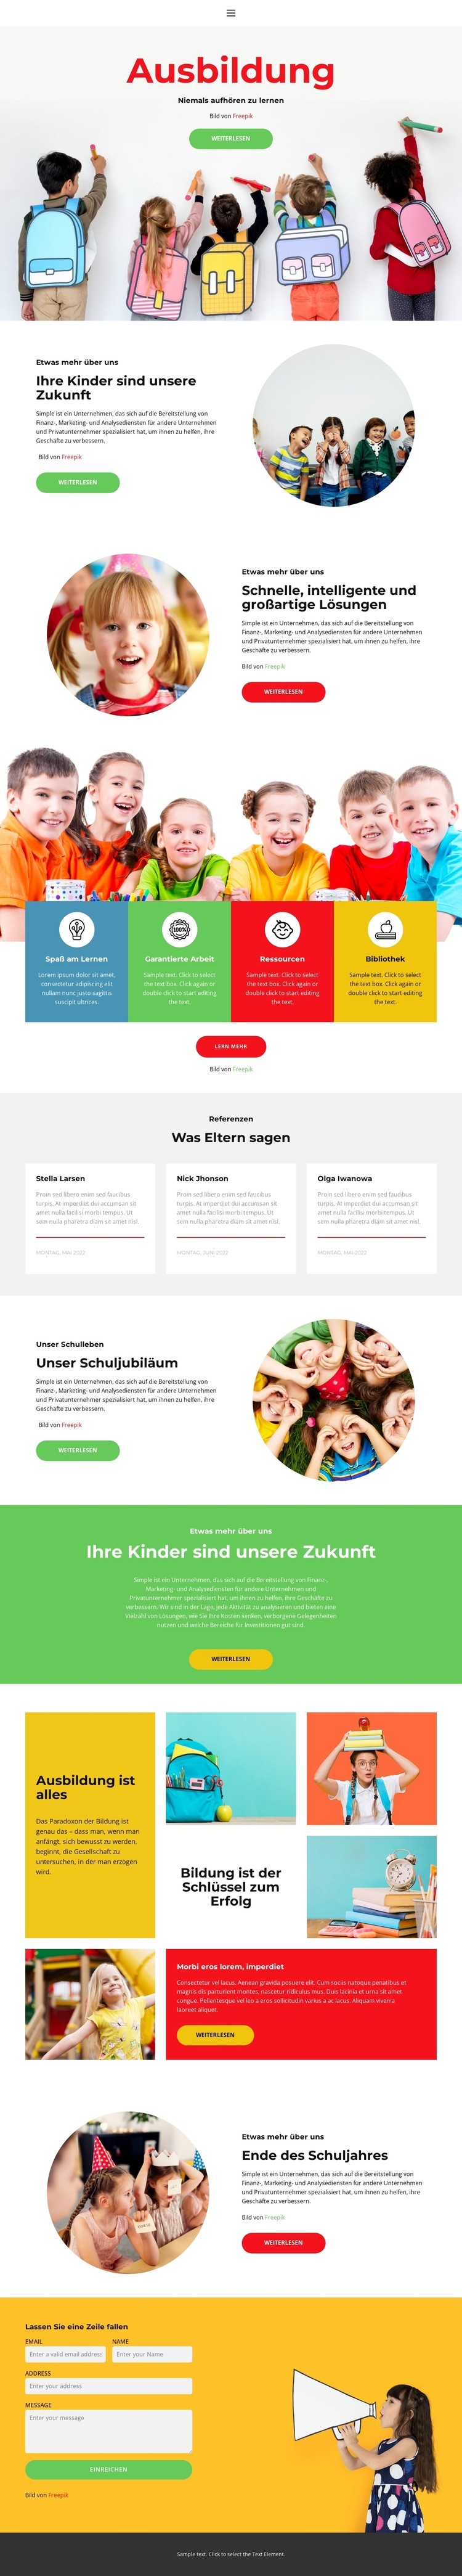 Unser Schulleben Website design